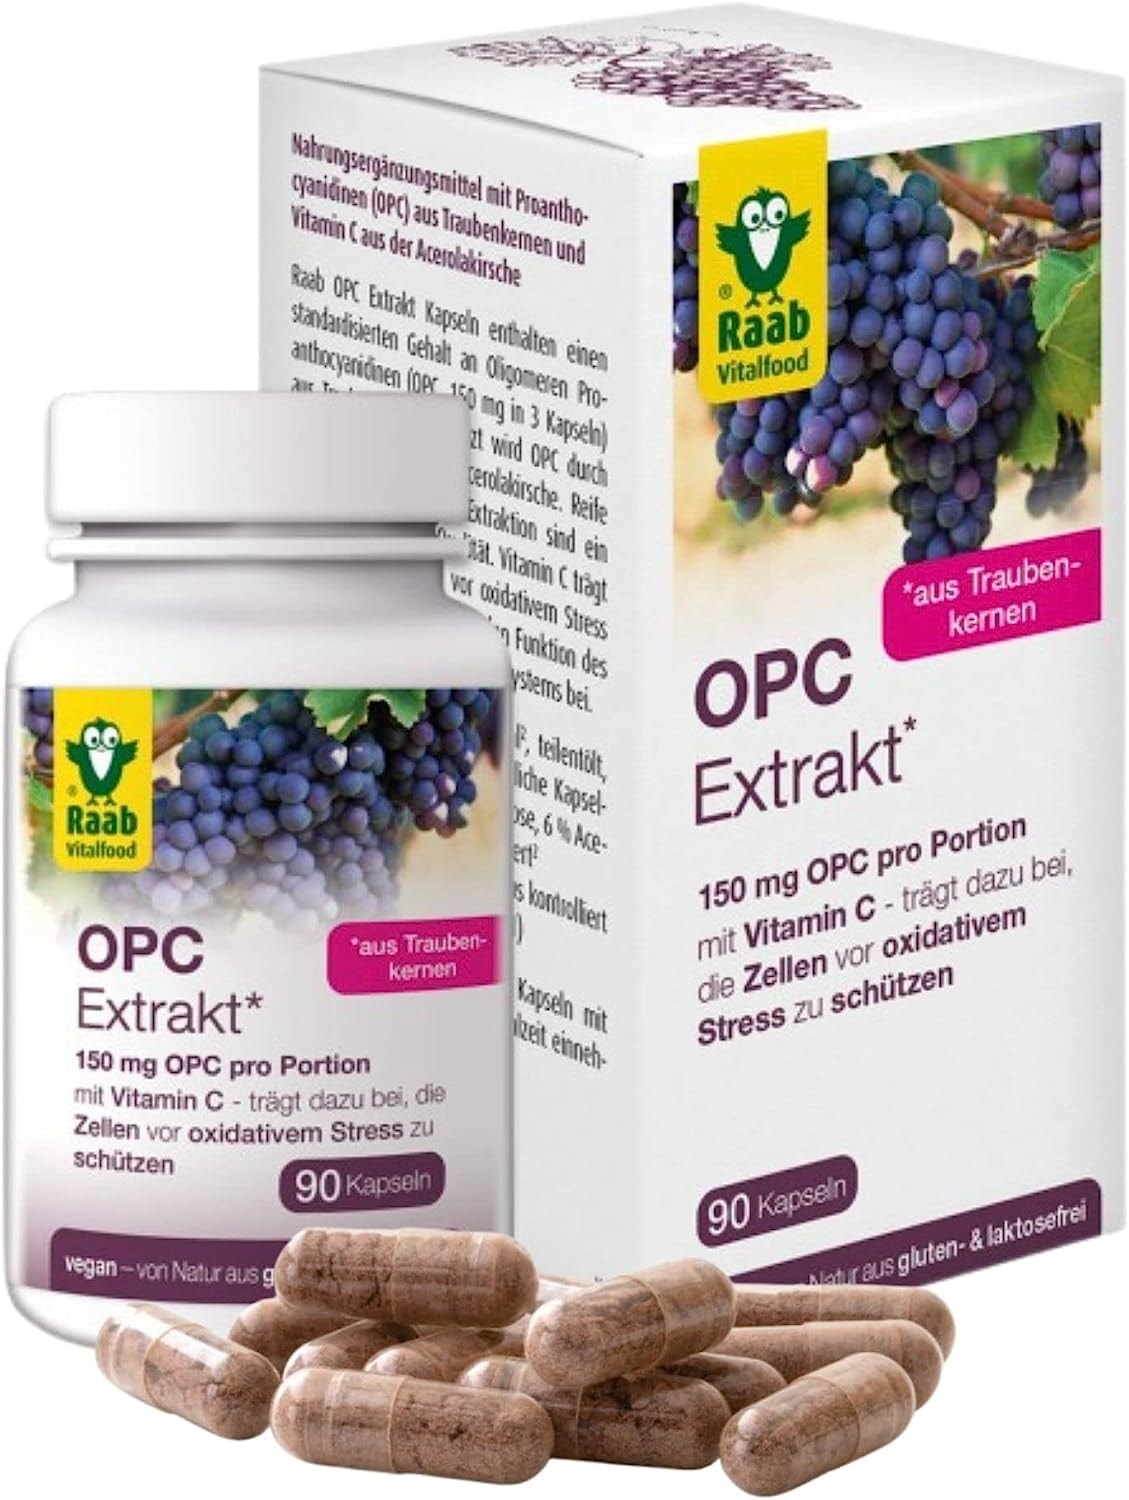 Raab Vitalfood OPC Extrakt Kapseln, 90 Stück, vegan & glutenfrei, Oligomere Proanthocyanidine aus Traubenkernen, Extrakt